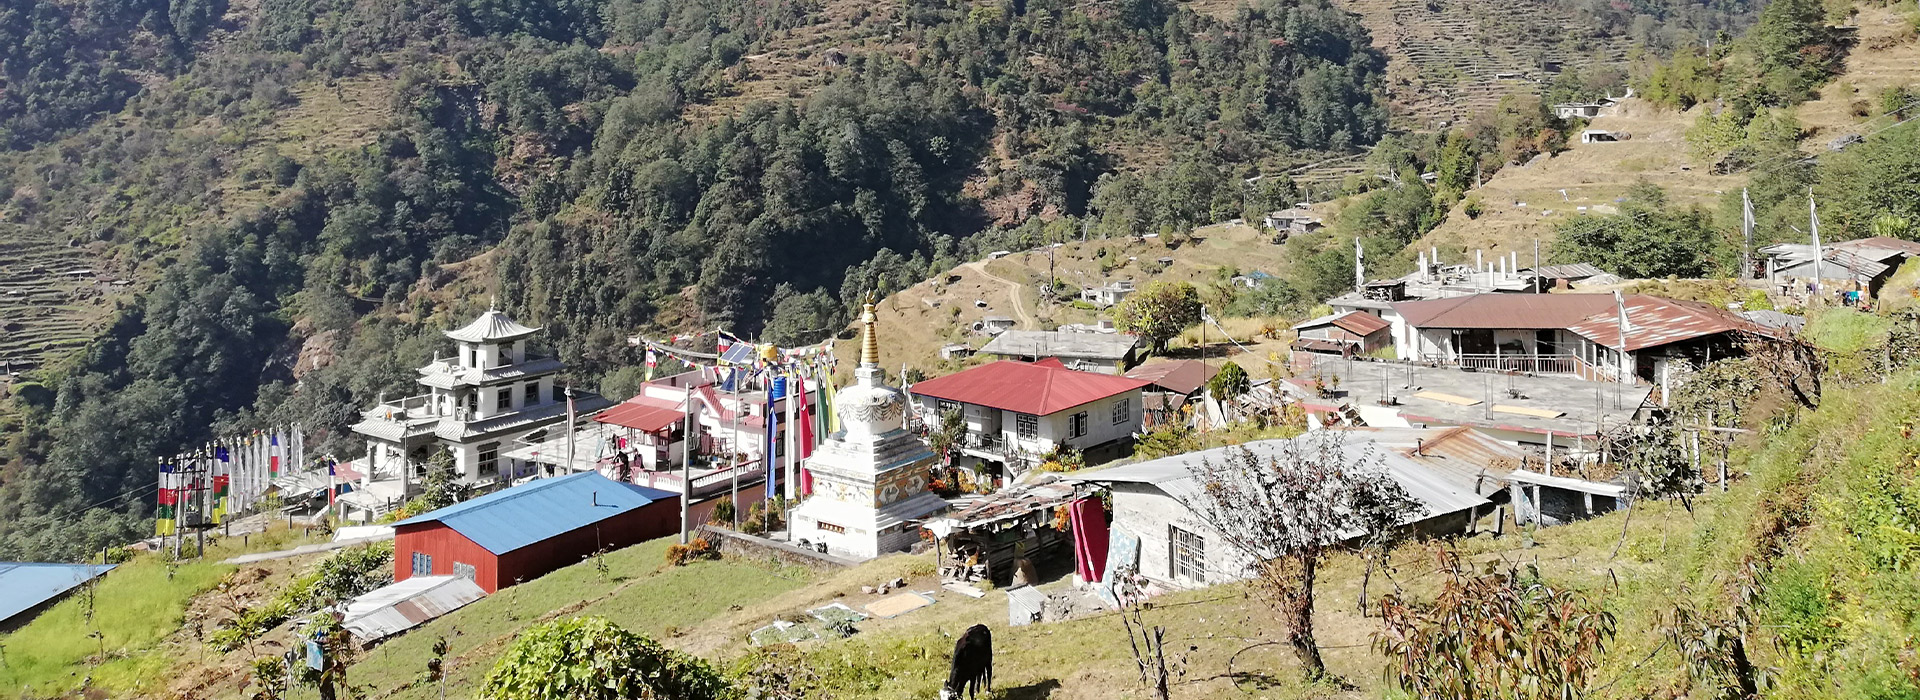 Cultural tours with homestay at Jayamrung-Lamasthan, Dhading